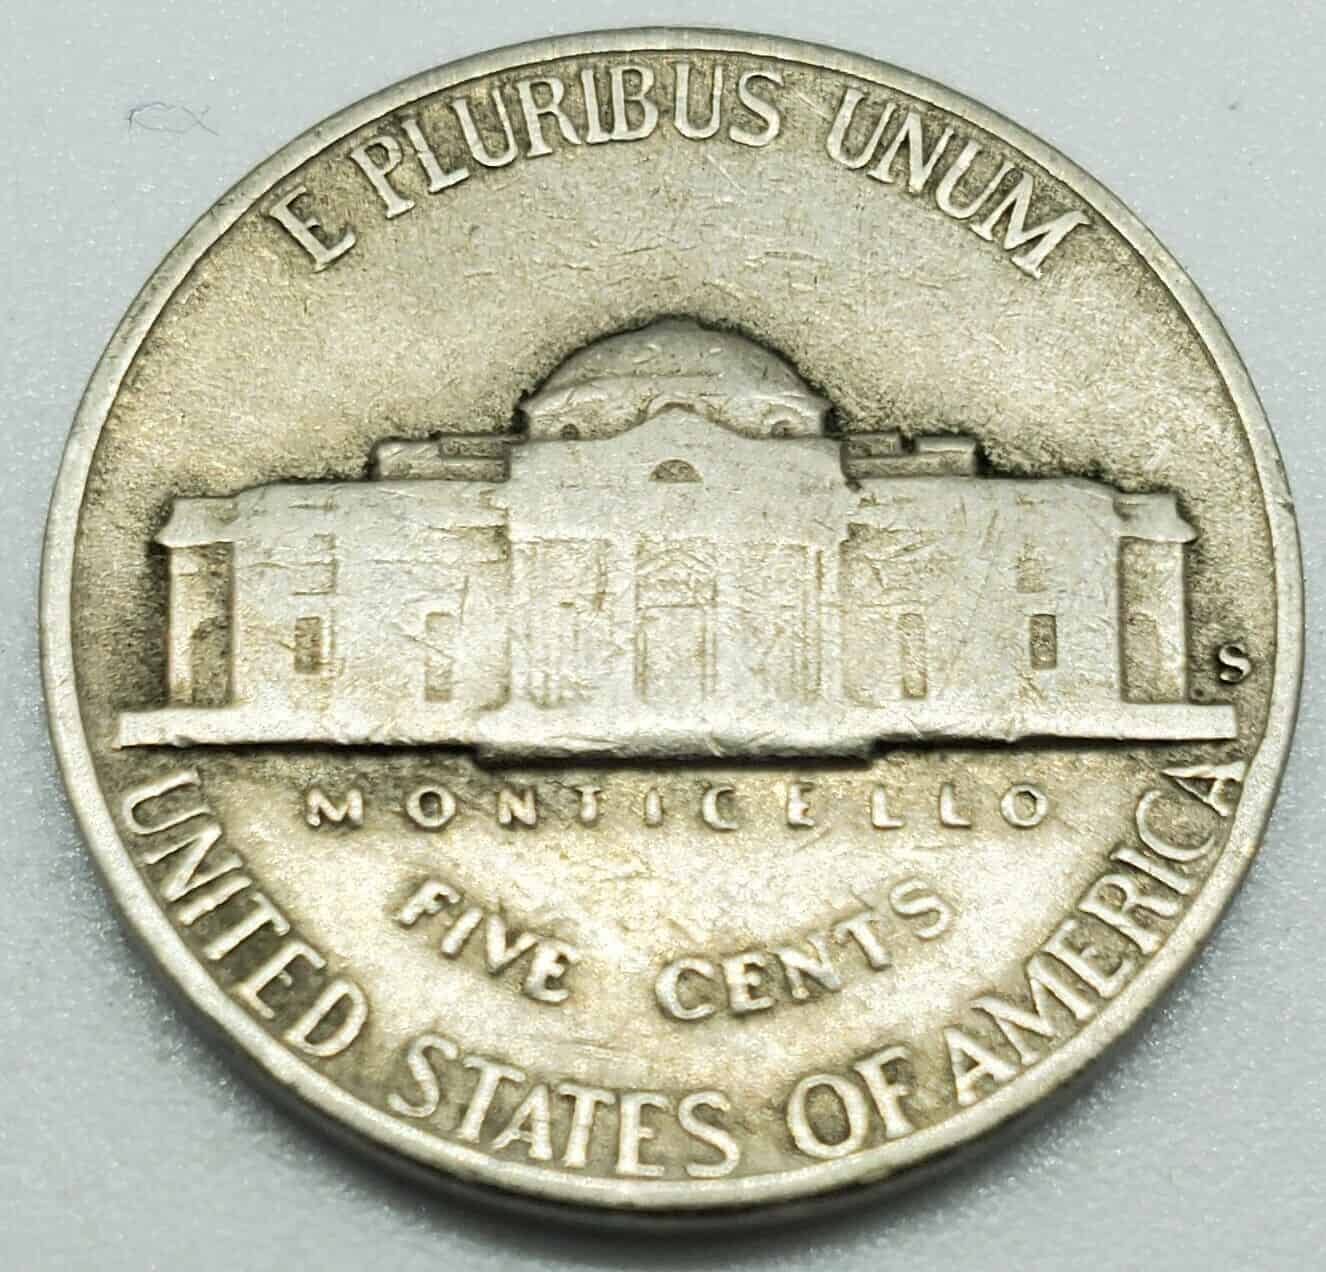 1947 S Nickel